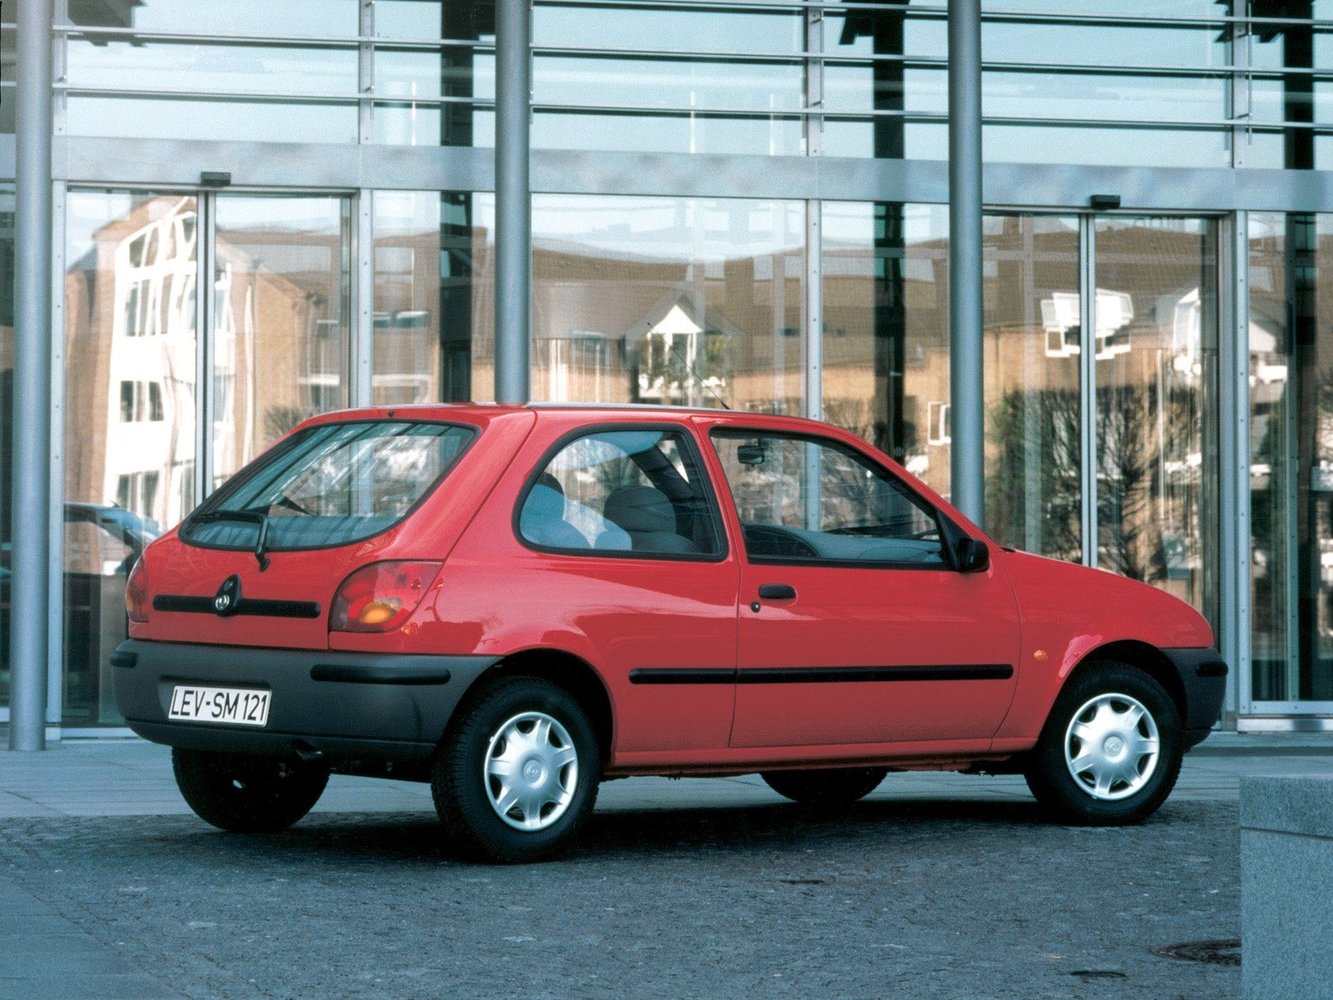 хэтчбек 3 дв. Mazda 121 1996 - 2002г выпуска модификация 1.2 CVT (75 л.с.)